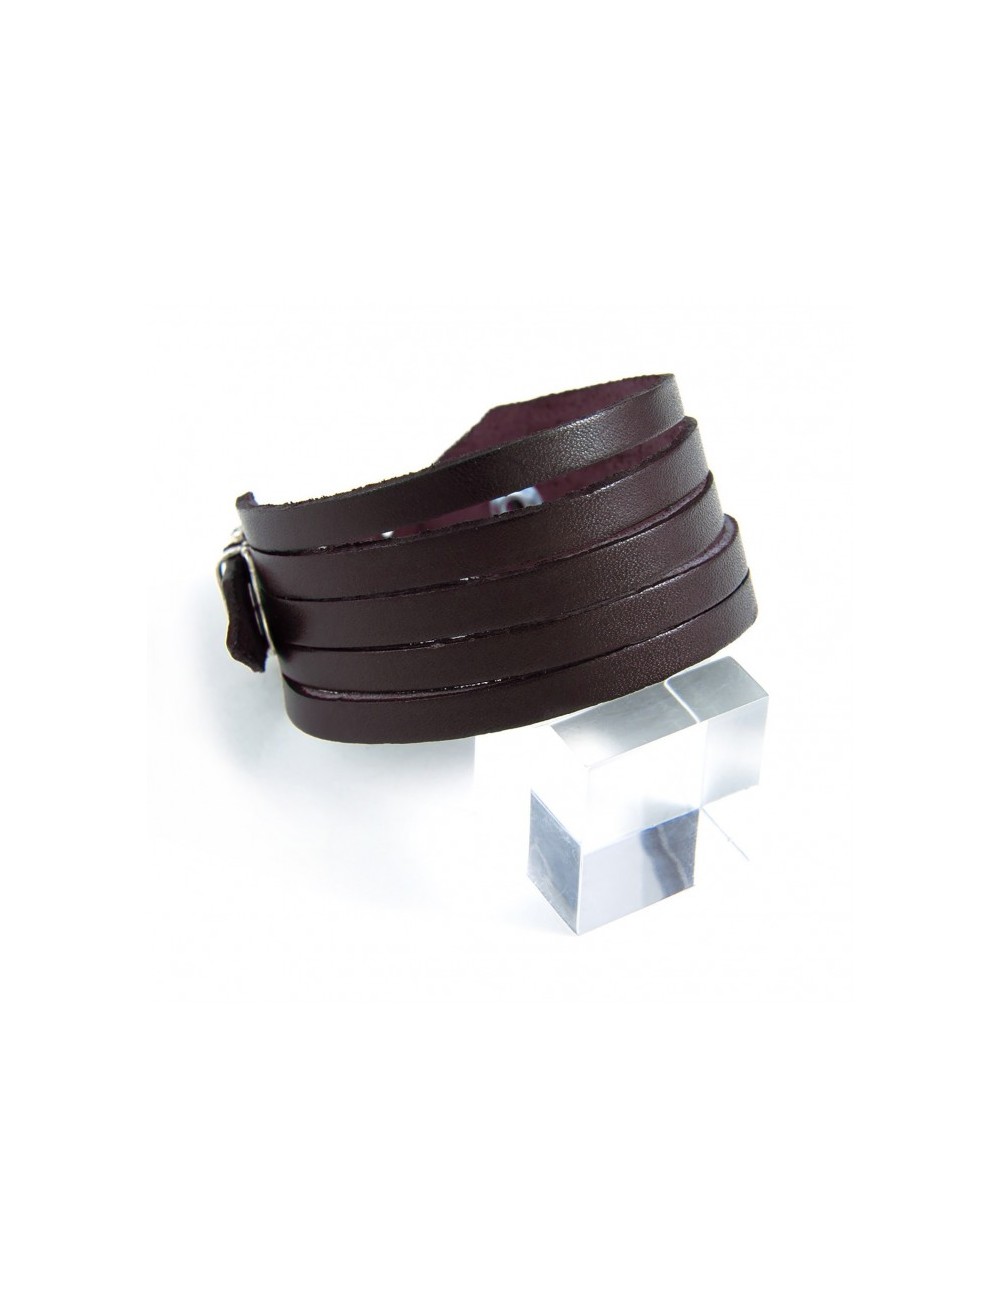 Bracelet en cuir coupé en bandes et fermoir ajustable.